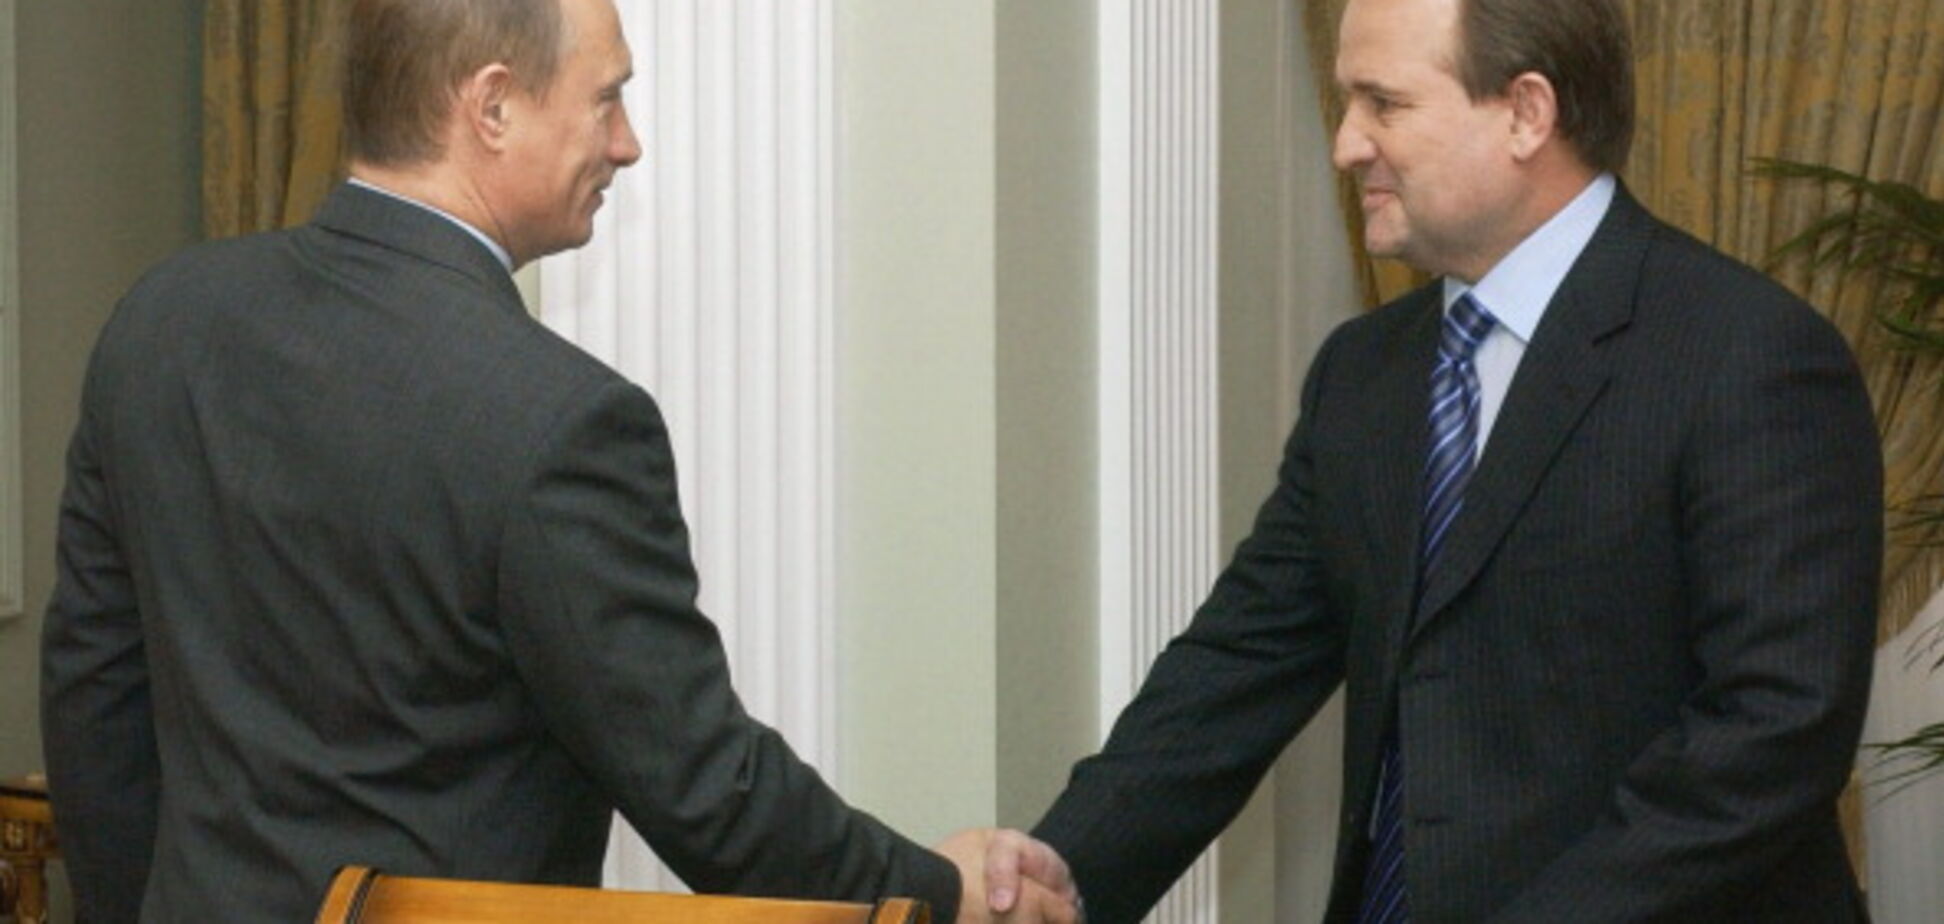 Тайная встреча: СМИ узнали о переговорах Путина с 'украинским националистом' в Крыму